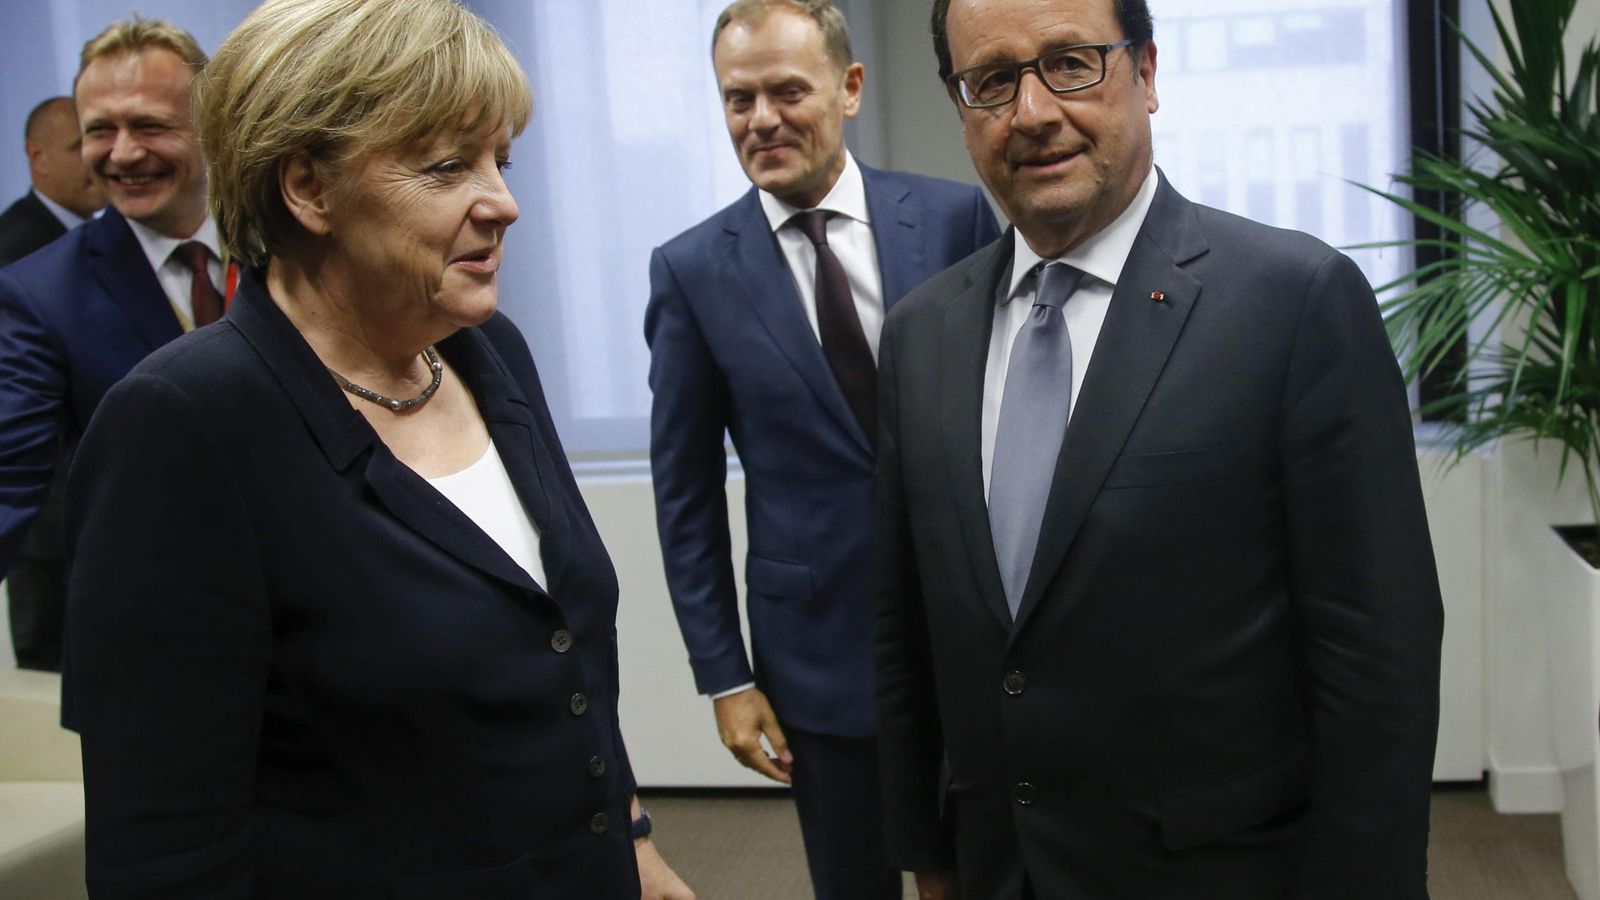 Foto: Angela Merkel y François Hollande en una imagen de archivo. (Efe)